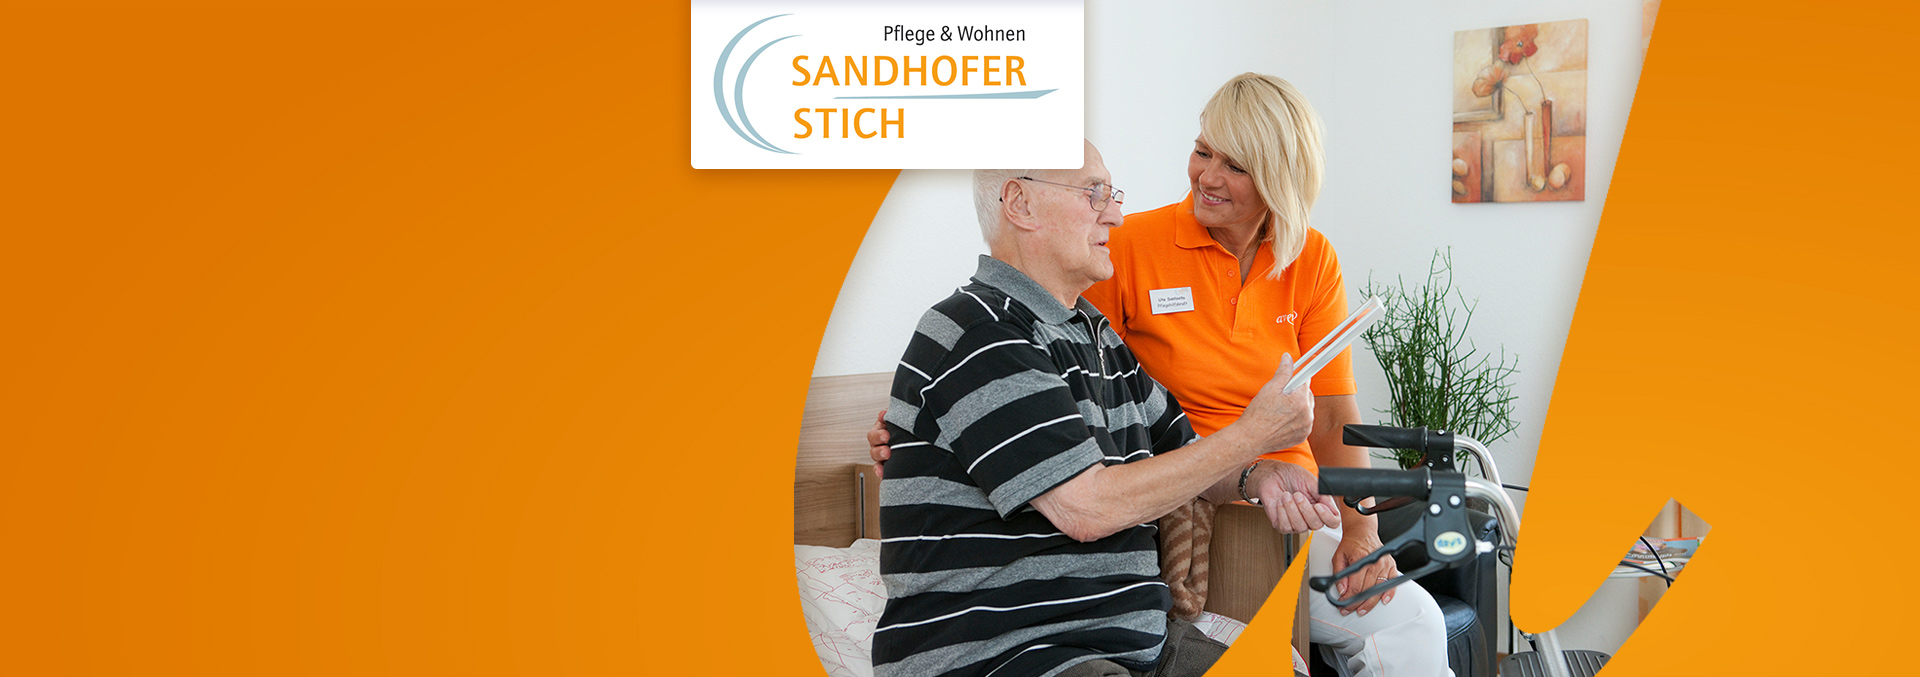 Pflege und Wohnen Sandhofer Stich: Eine Pflegerin leistet einem Bewohner Gesellschaft, der auf seinem Bett sitzt und über ein Bild redet, das er in der Hand hält.